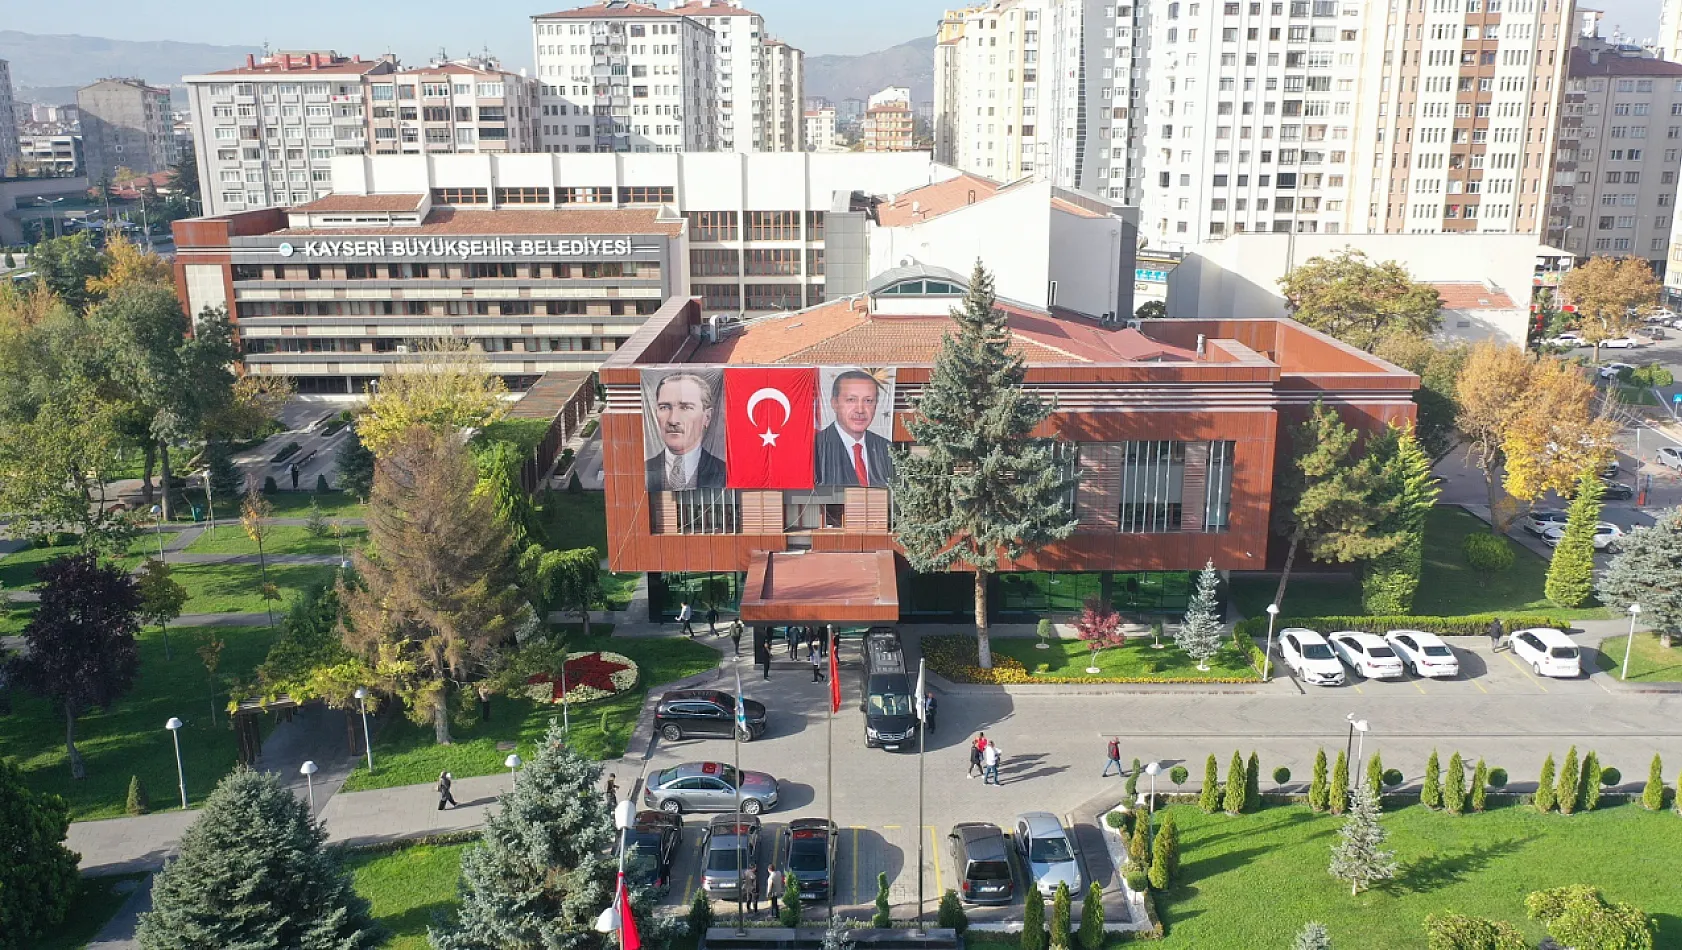 Kayseri'de 8 bin belediye çalışanını ilgilendiren müjde bugün açıklanacak mı?